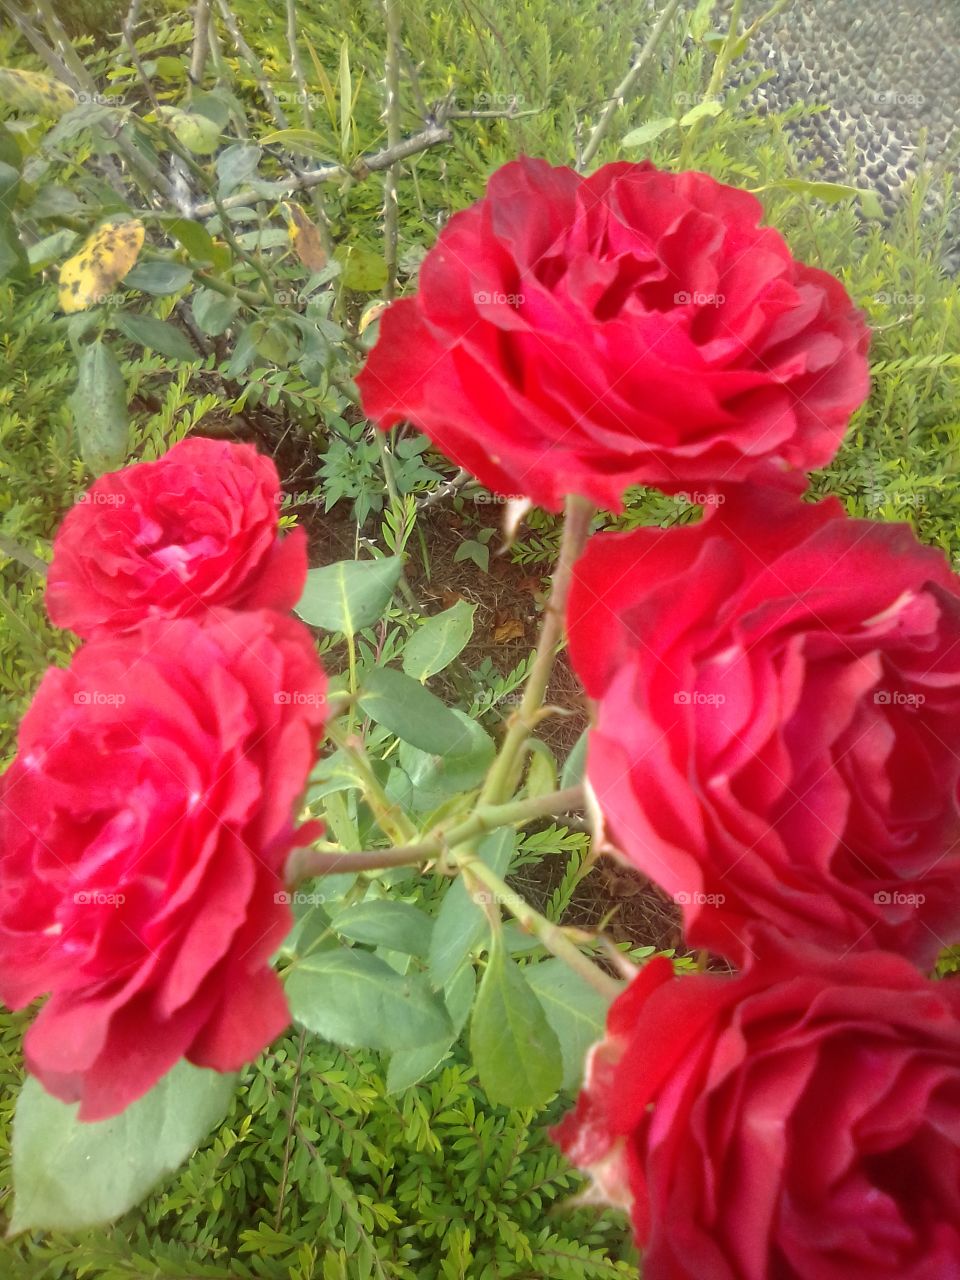 beautiful roses and beautiful roses